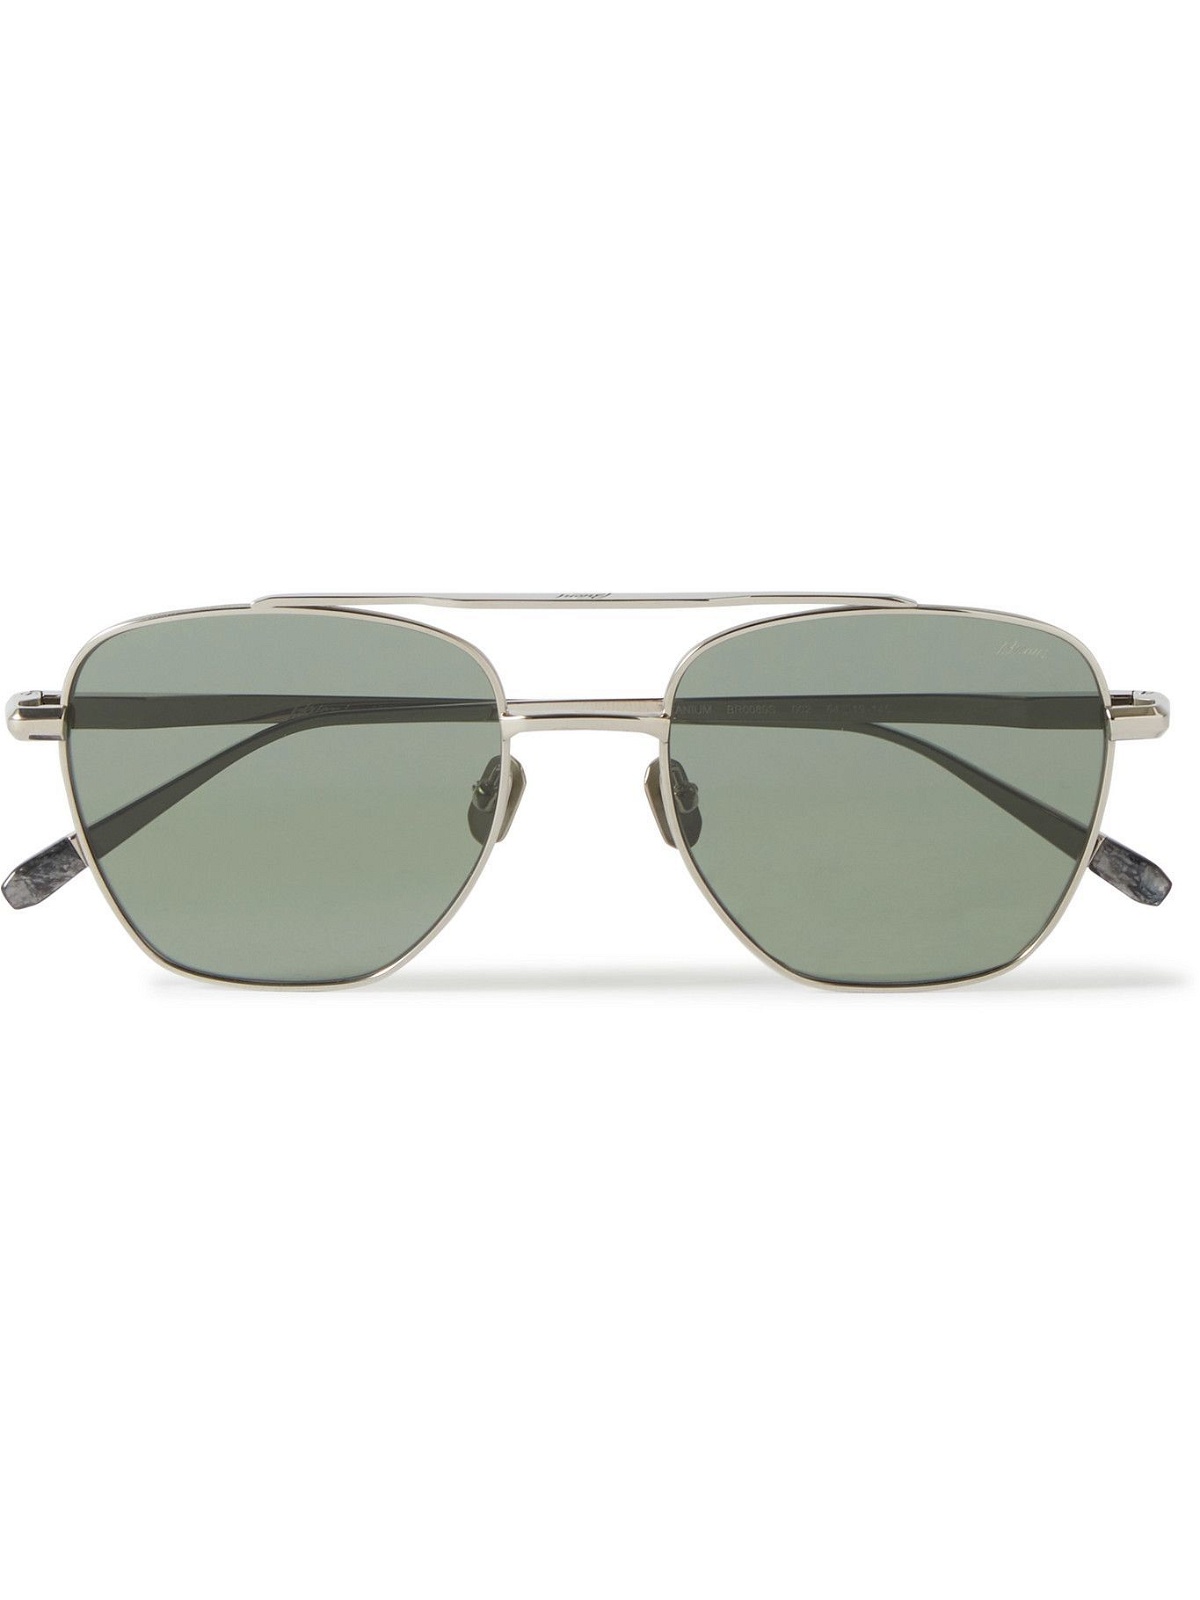 BRIONI - Aviator-Style Titanium Sunglasses Brioni